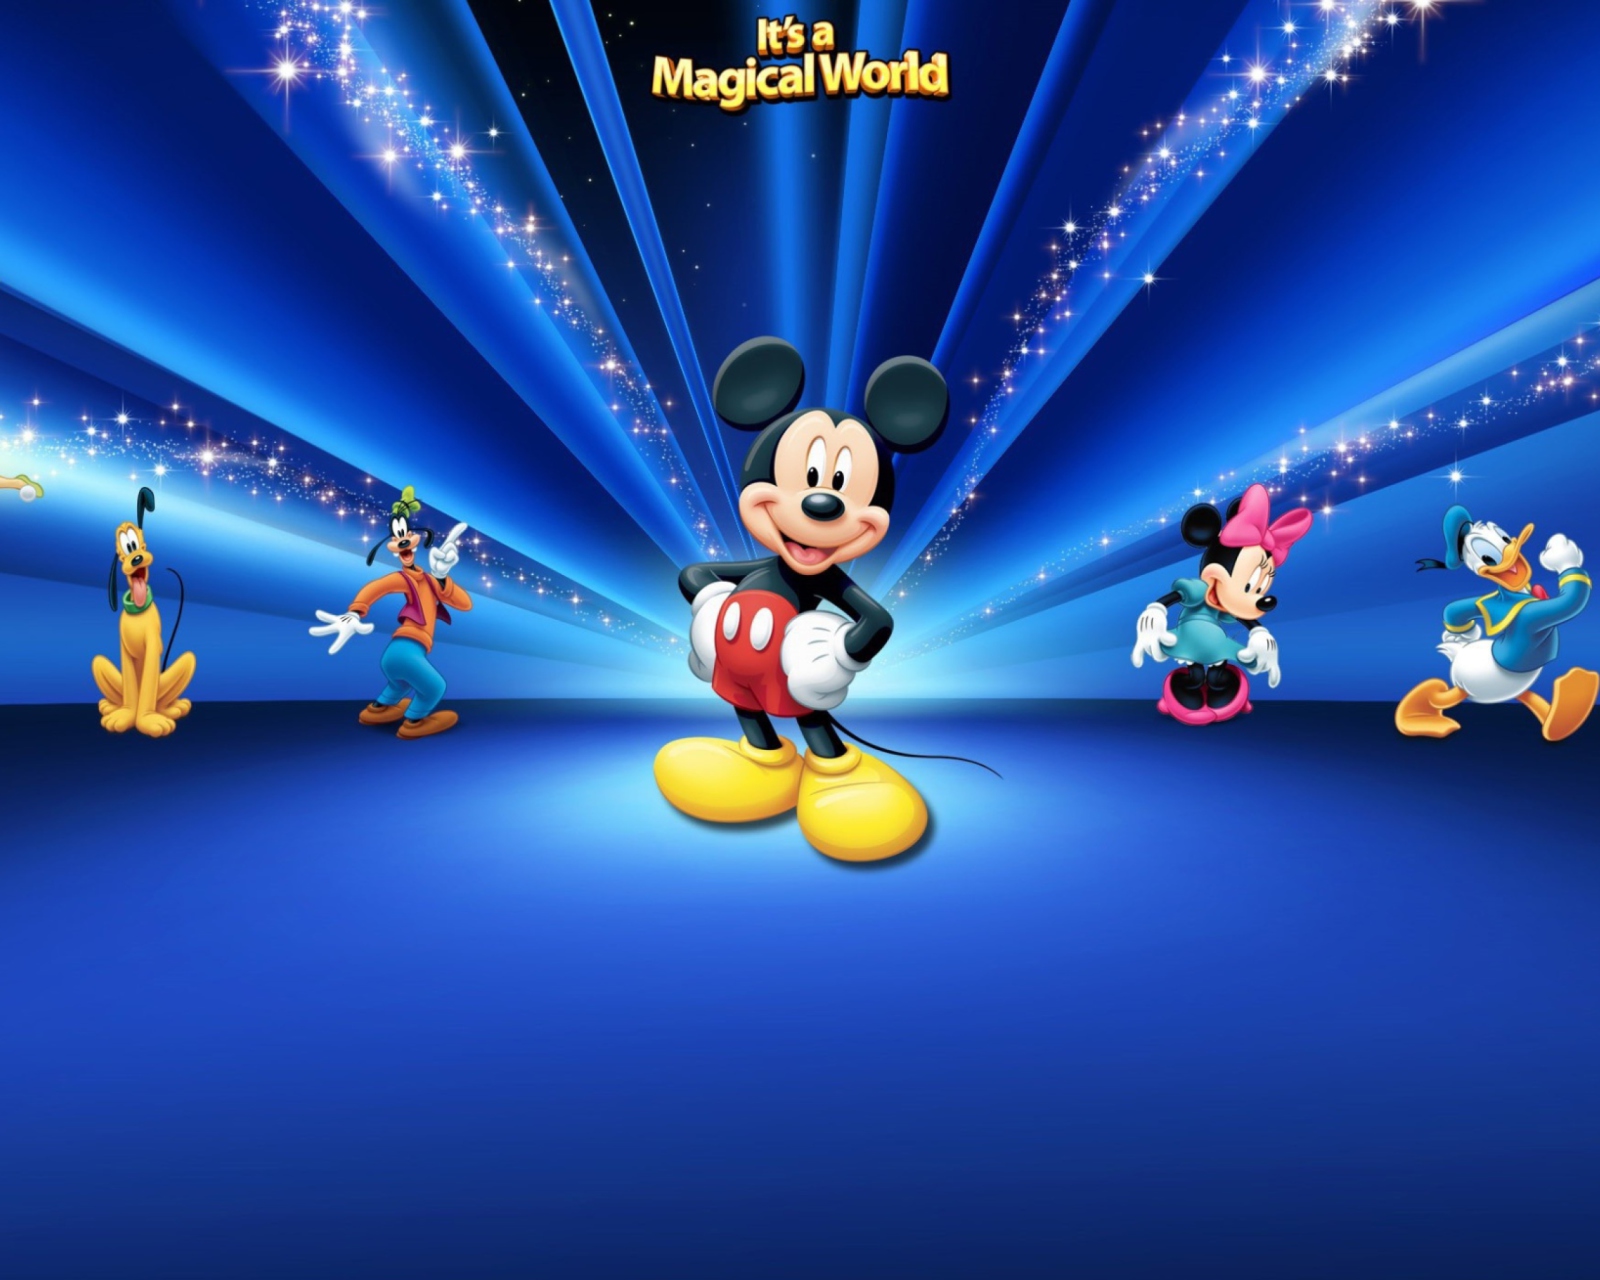 Magical Disney World wallpaper 1600x1280